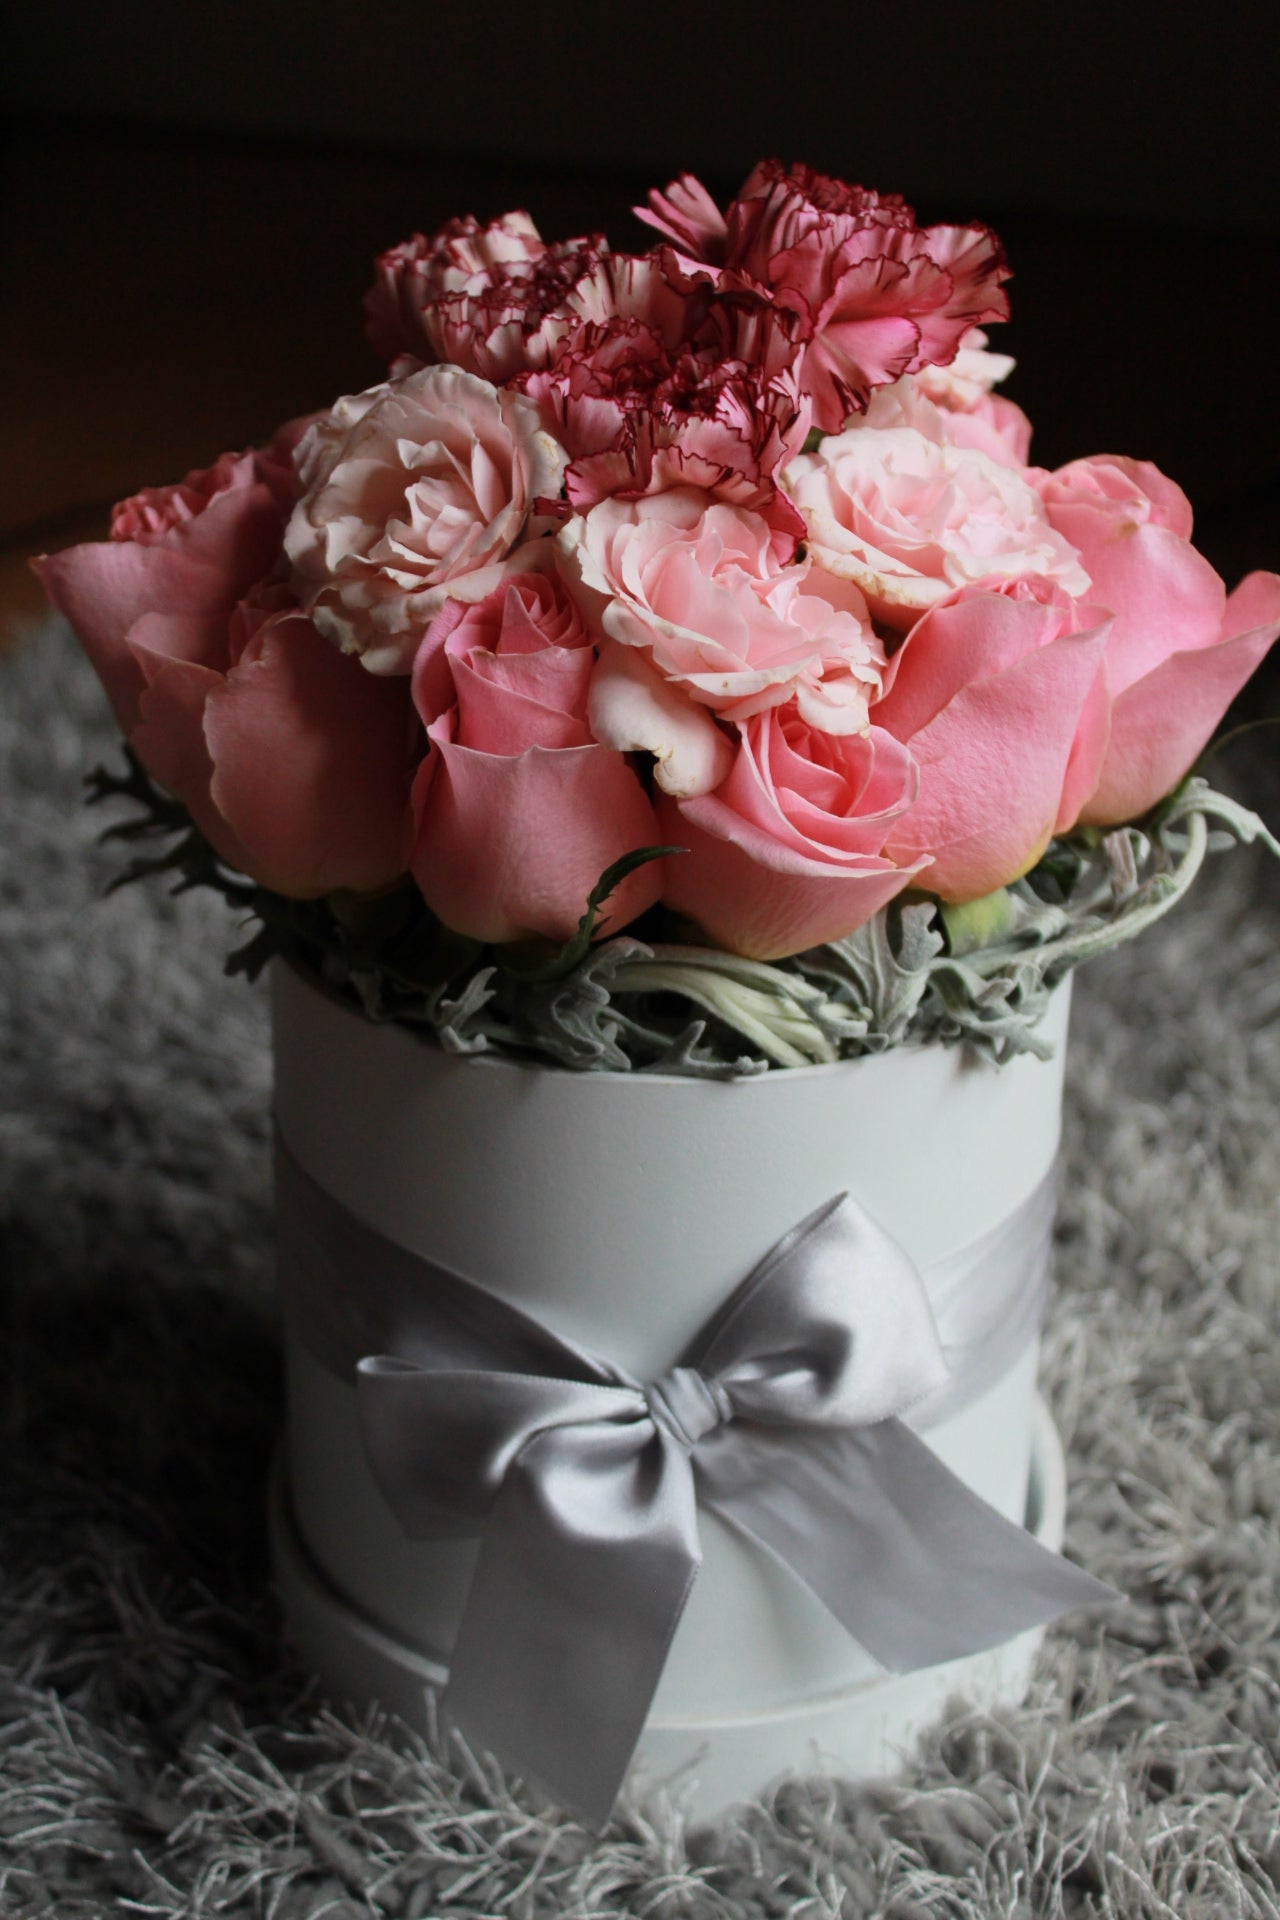 Rosa de invernadero con mini rosas y claveles; caja de carton rígido.